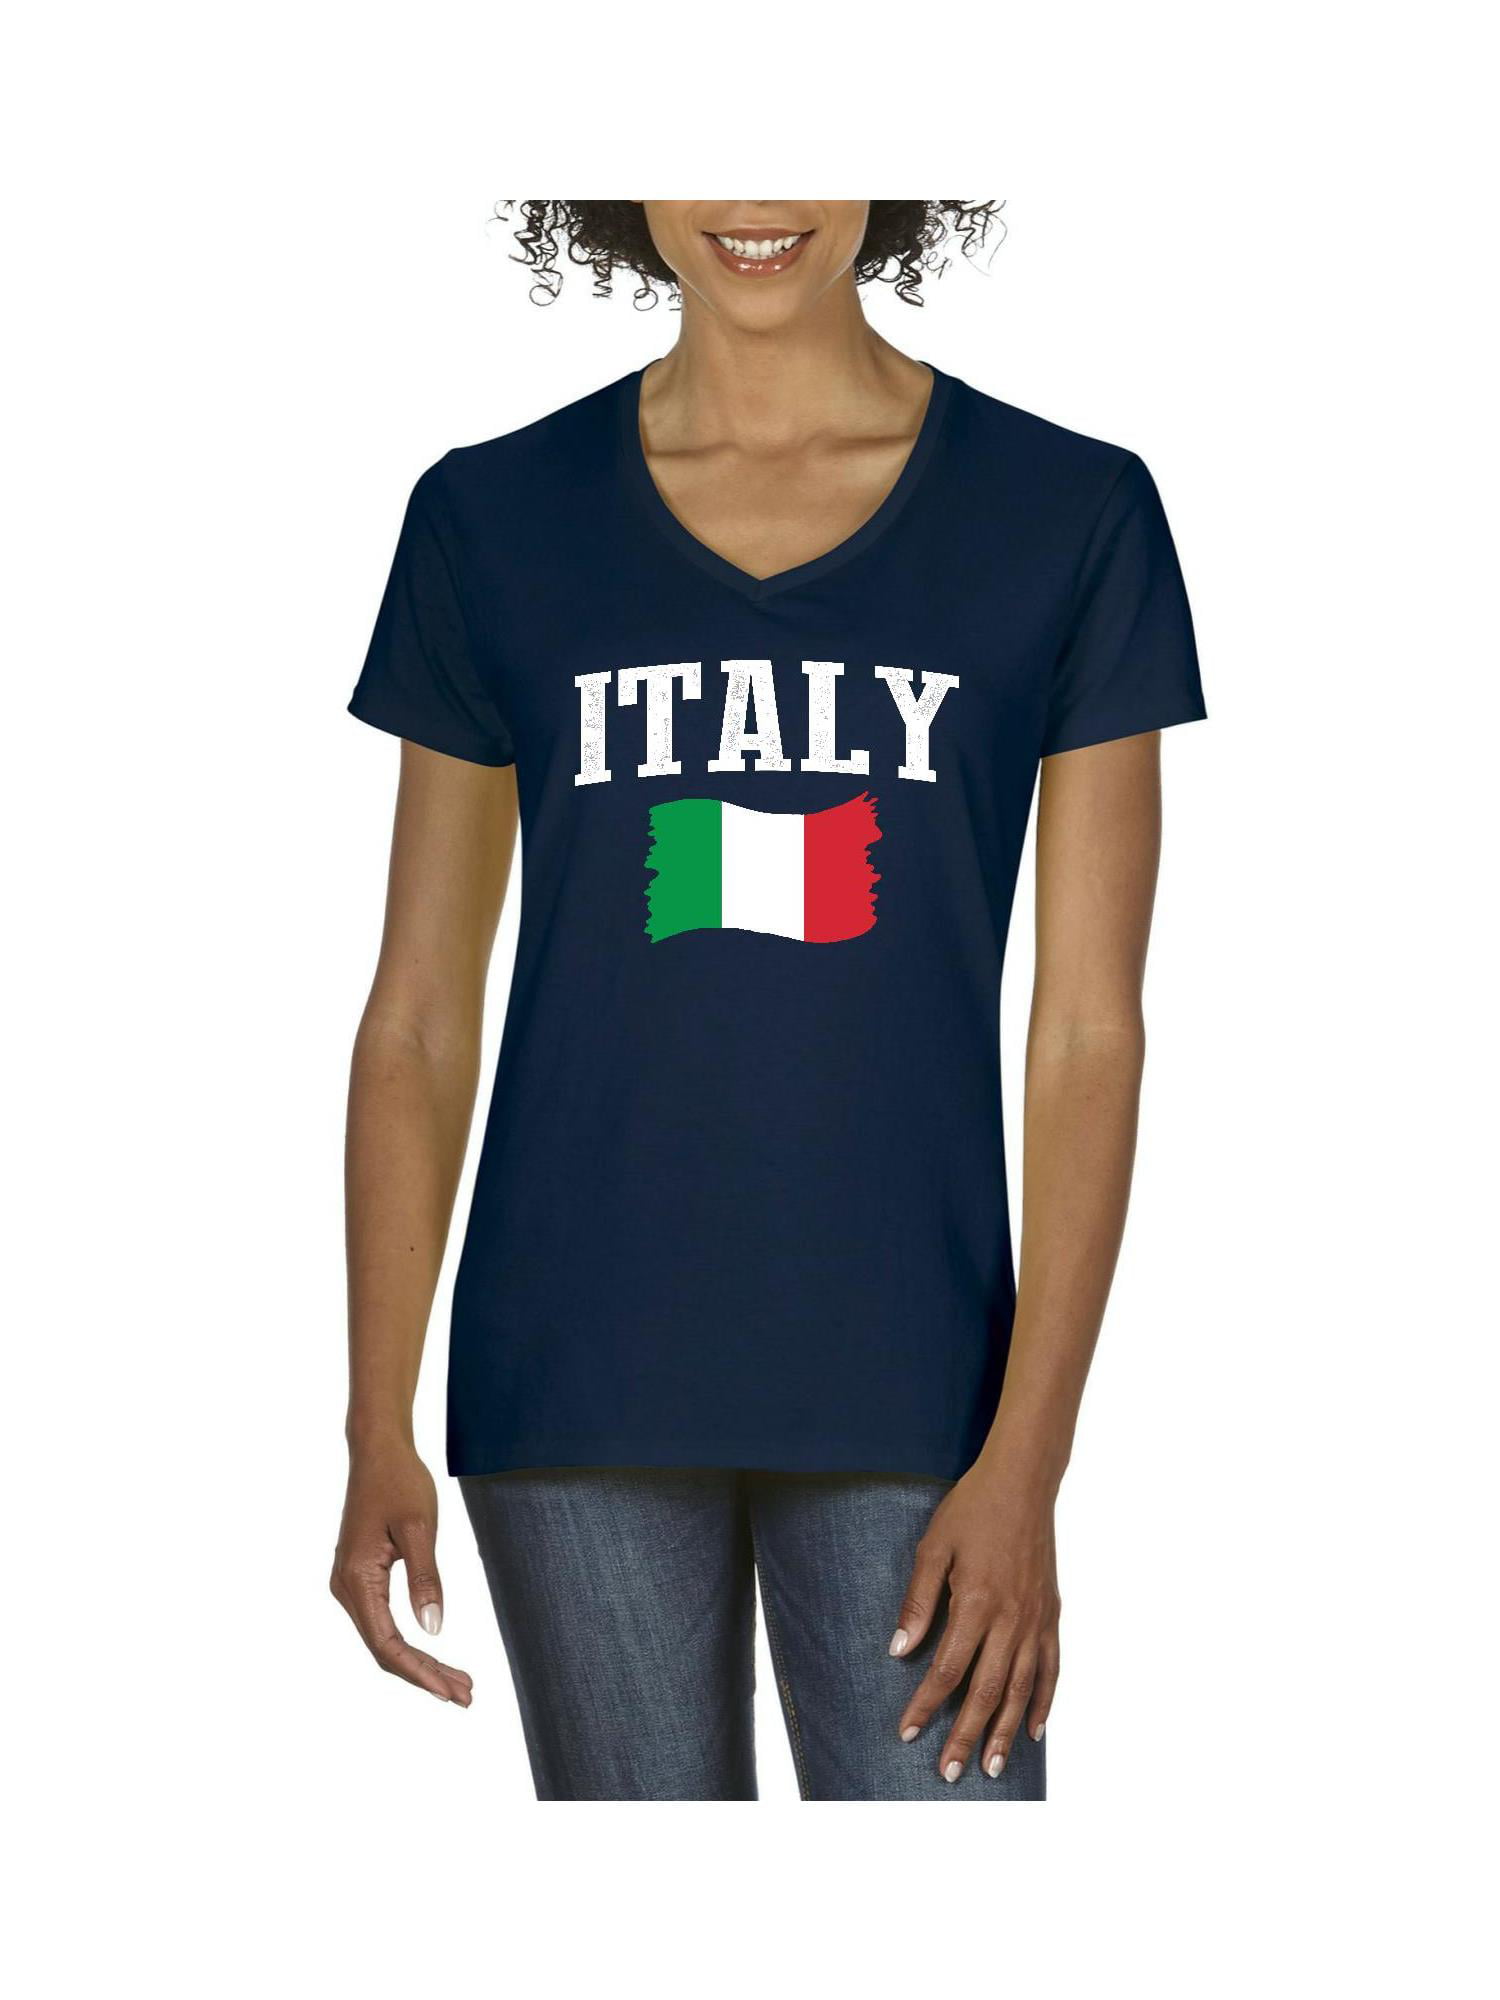 Womens Italy V-Neck T-Shirt